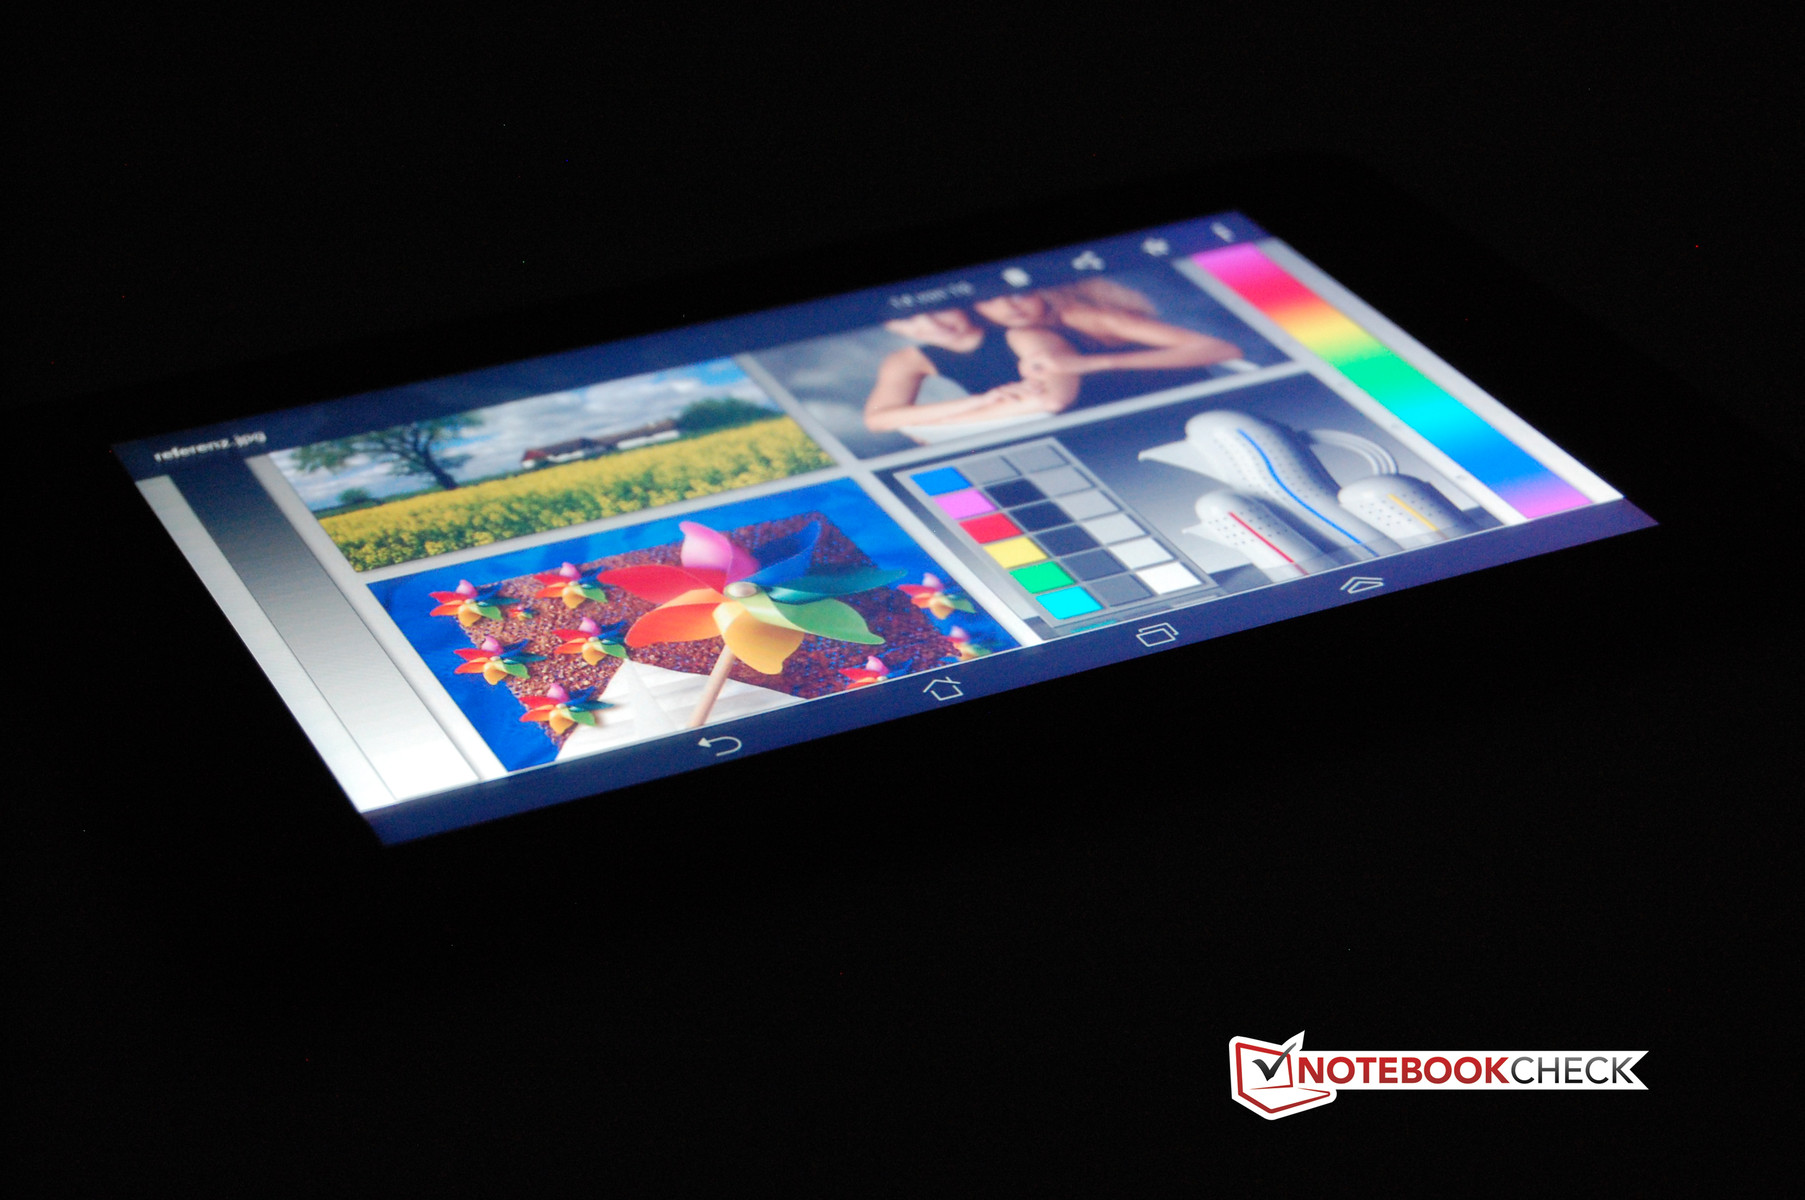 Asus Fonepad: Smartphone với màn hình lớn 7 inch 7